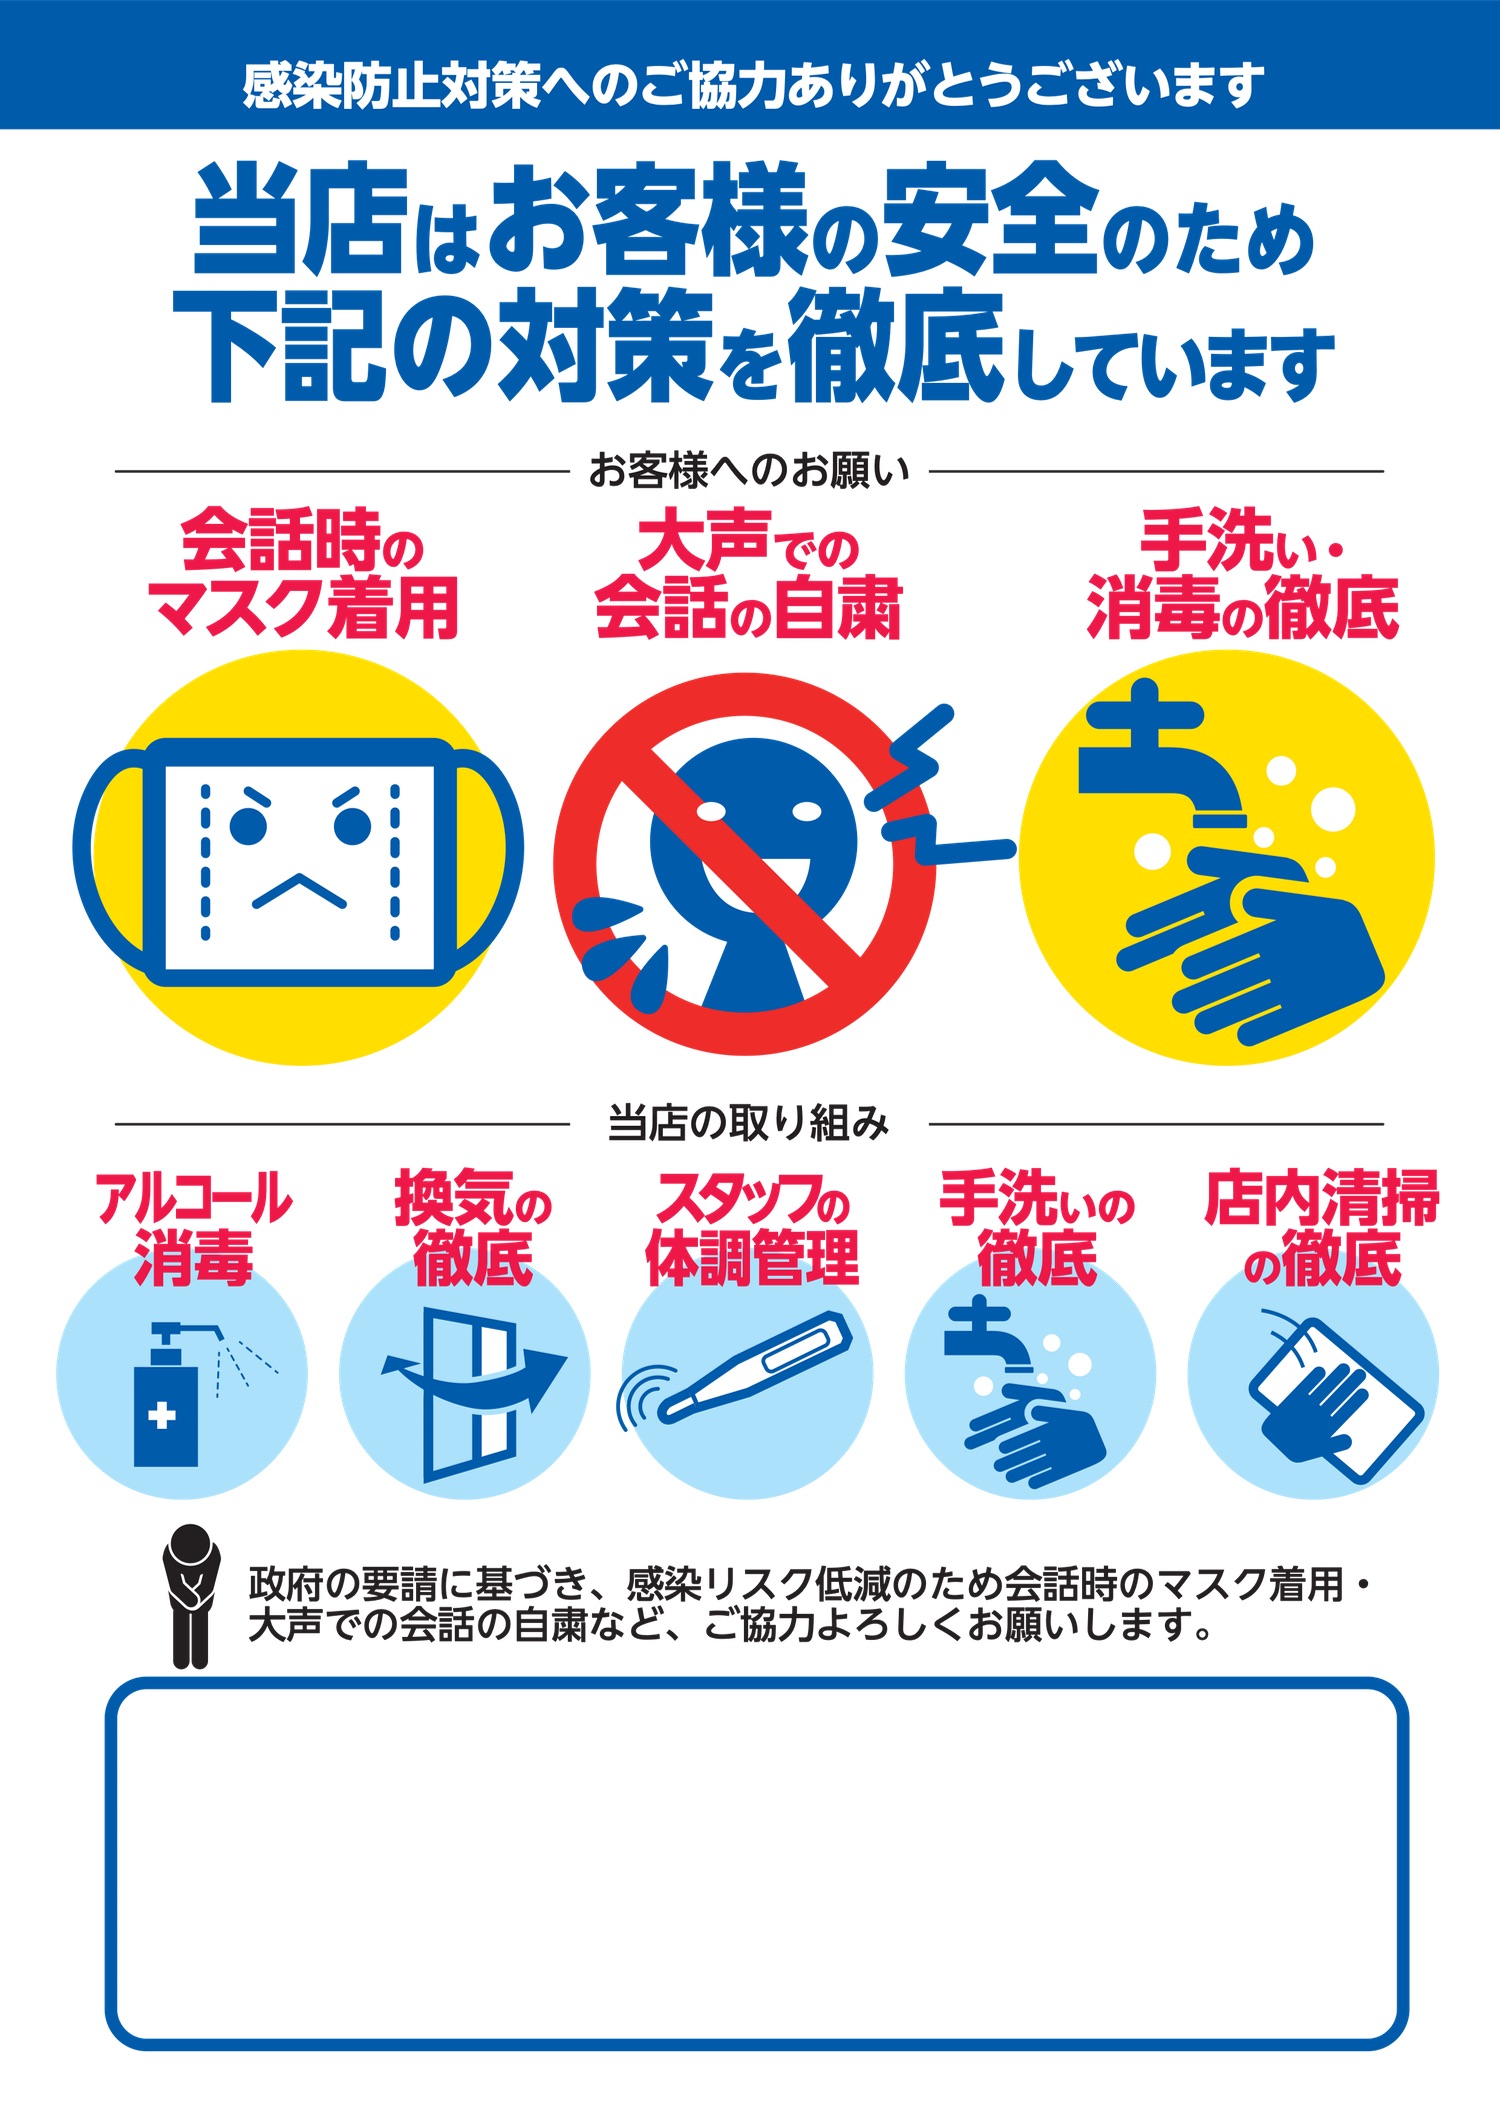 Die neuen Restaurant-Regeln für den Quasi-Notstand in der Stadt Osaka.